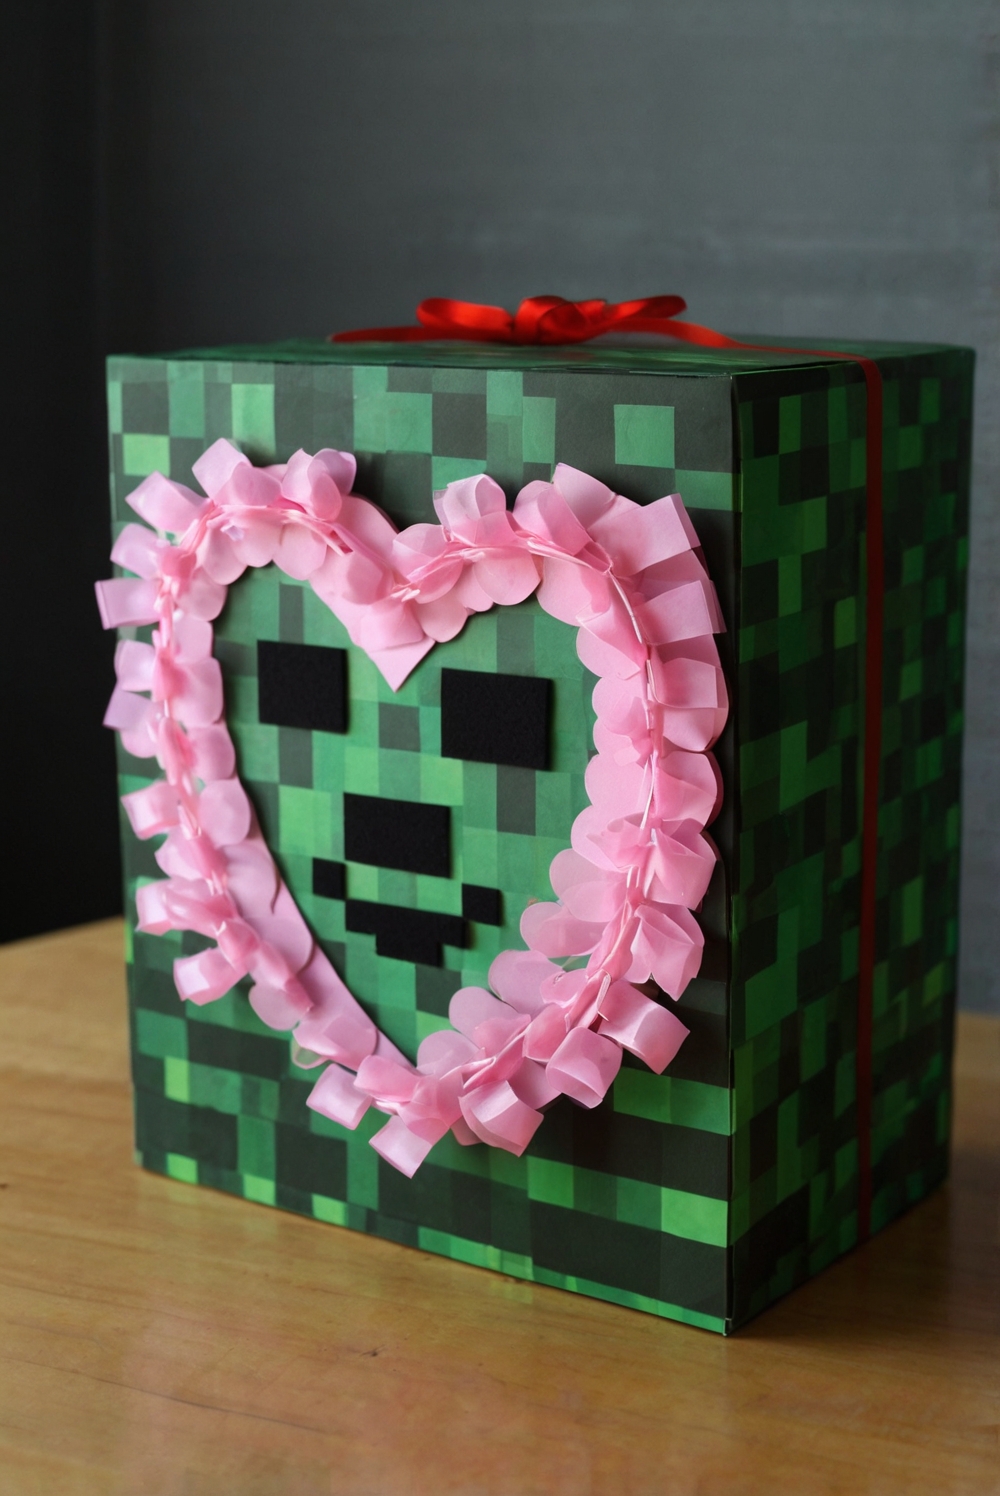 How to Make a Creeper Valentine Box: DIY Ideas (Craft a Unique Valentine’s Day Box)